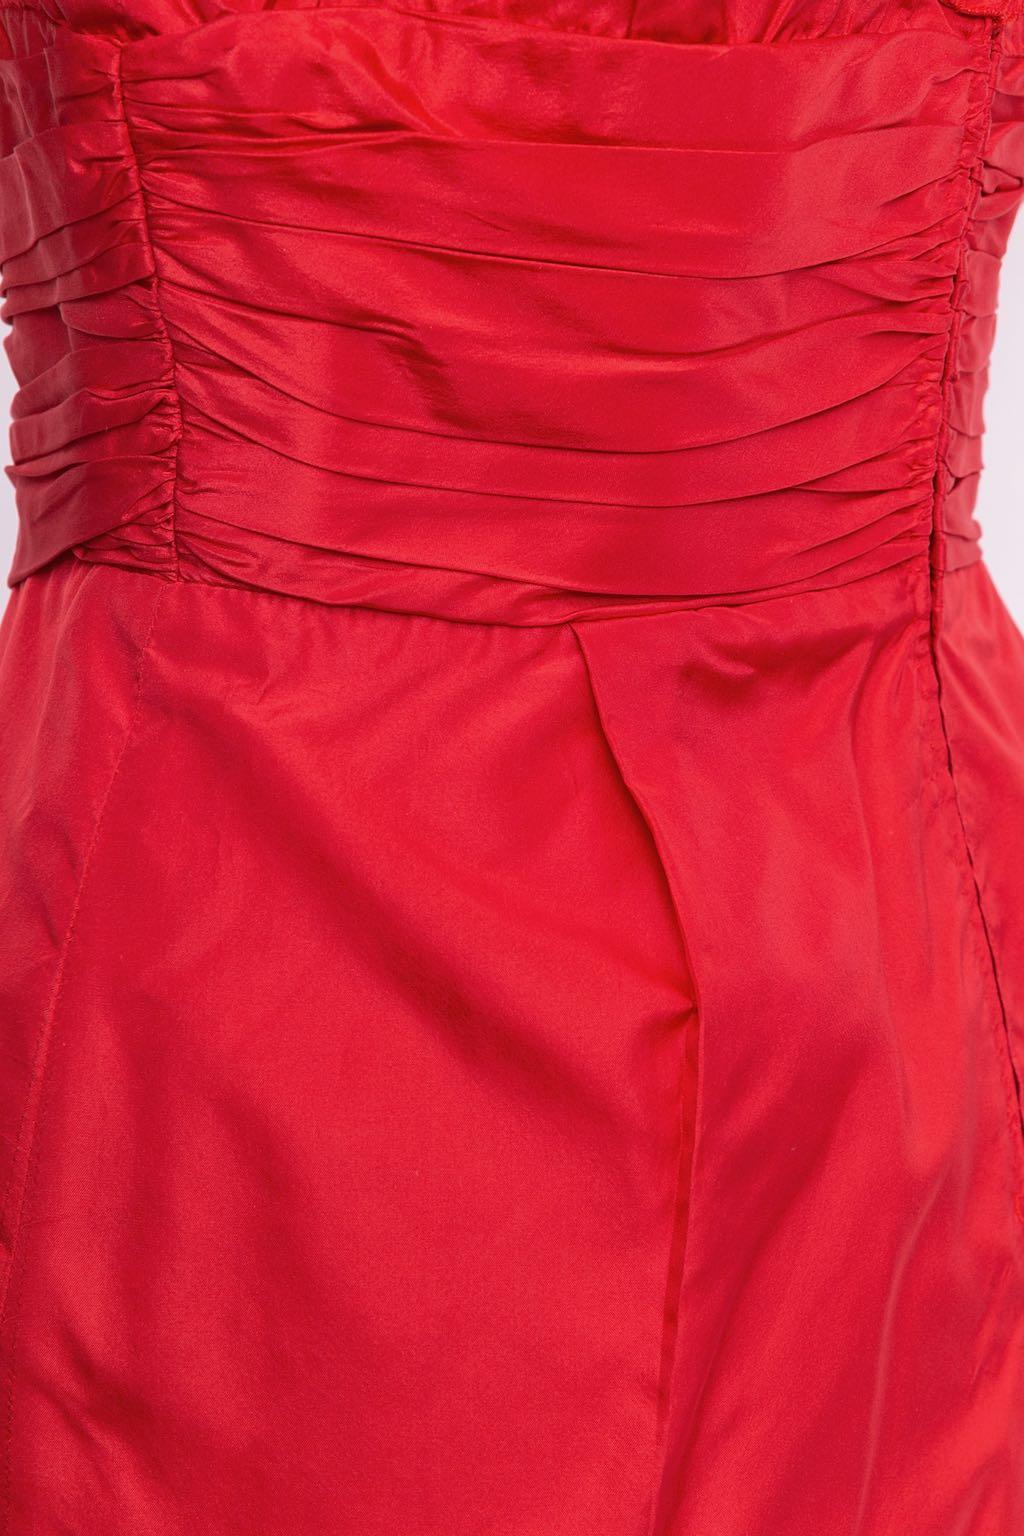 Azzaro Taffeta Dress, Size 36FR For Sale 3